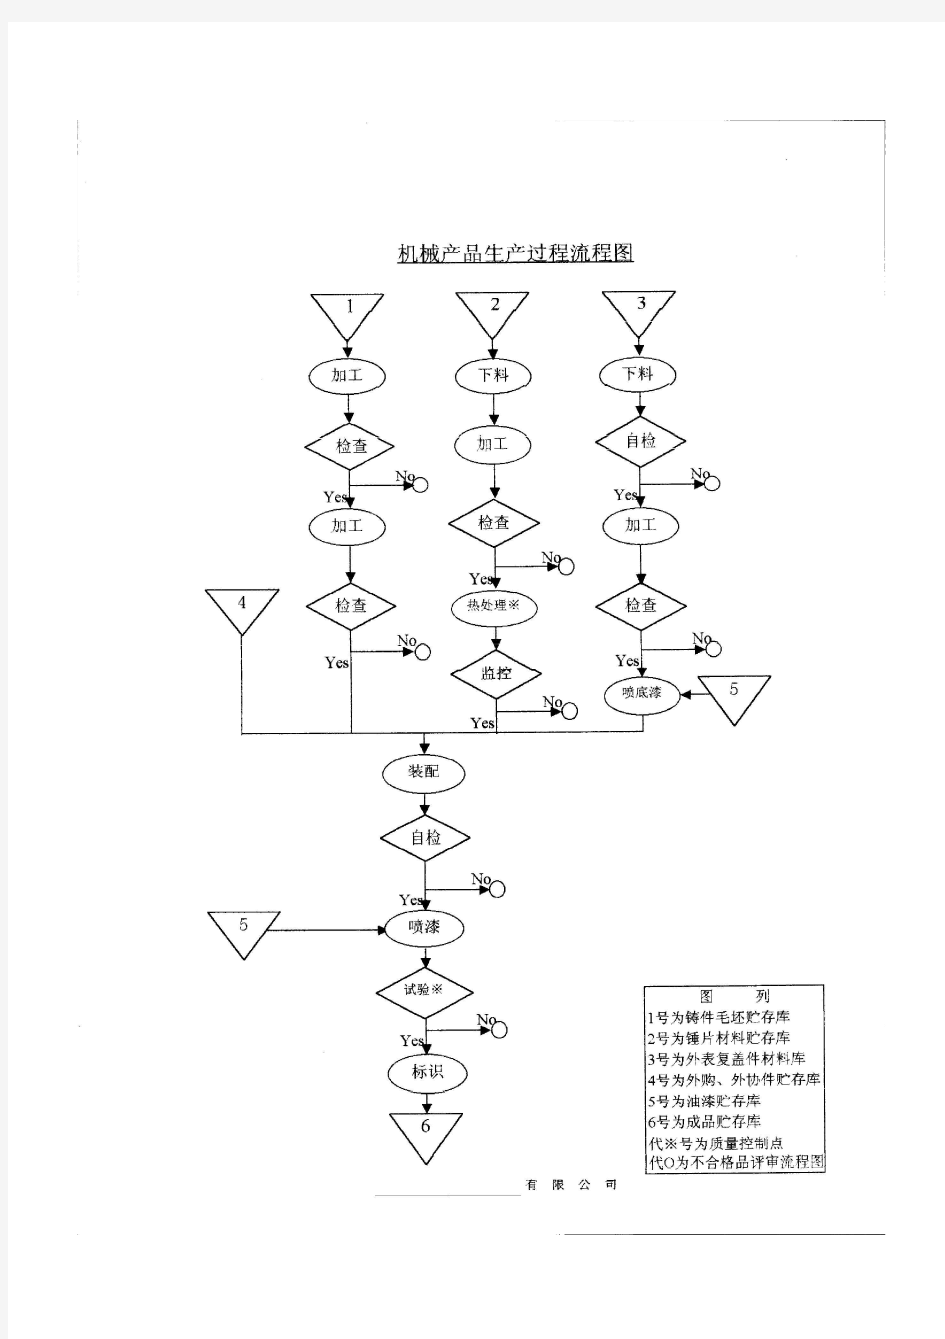 机械产品生产过程流程图